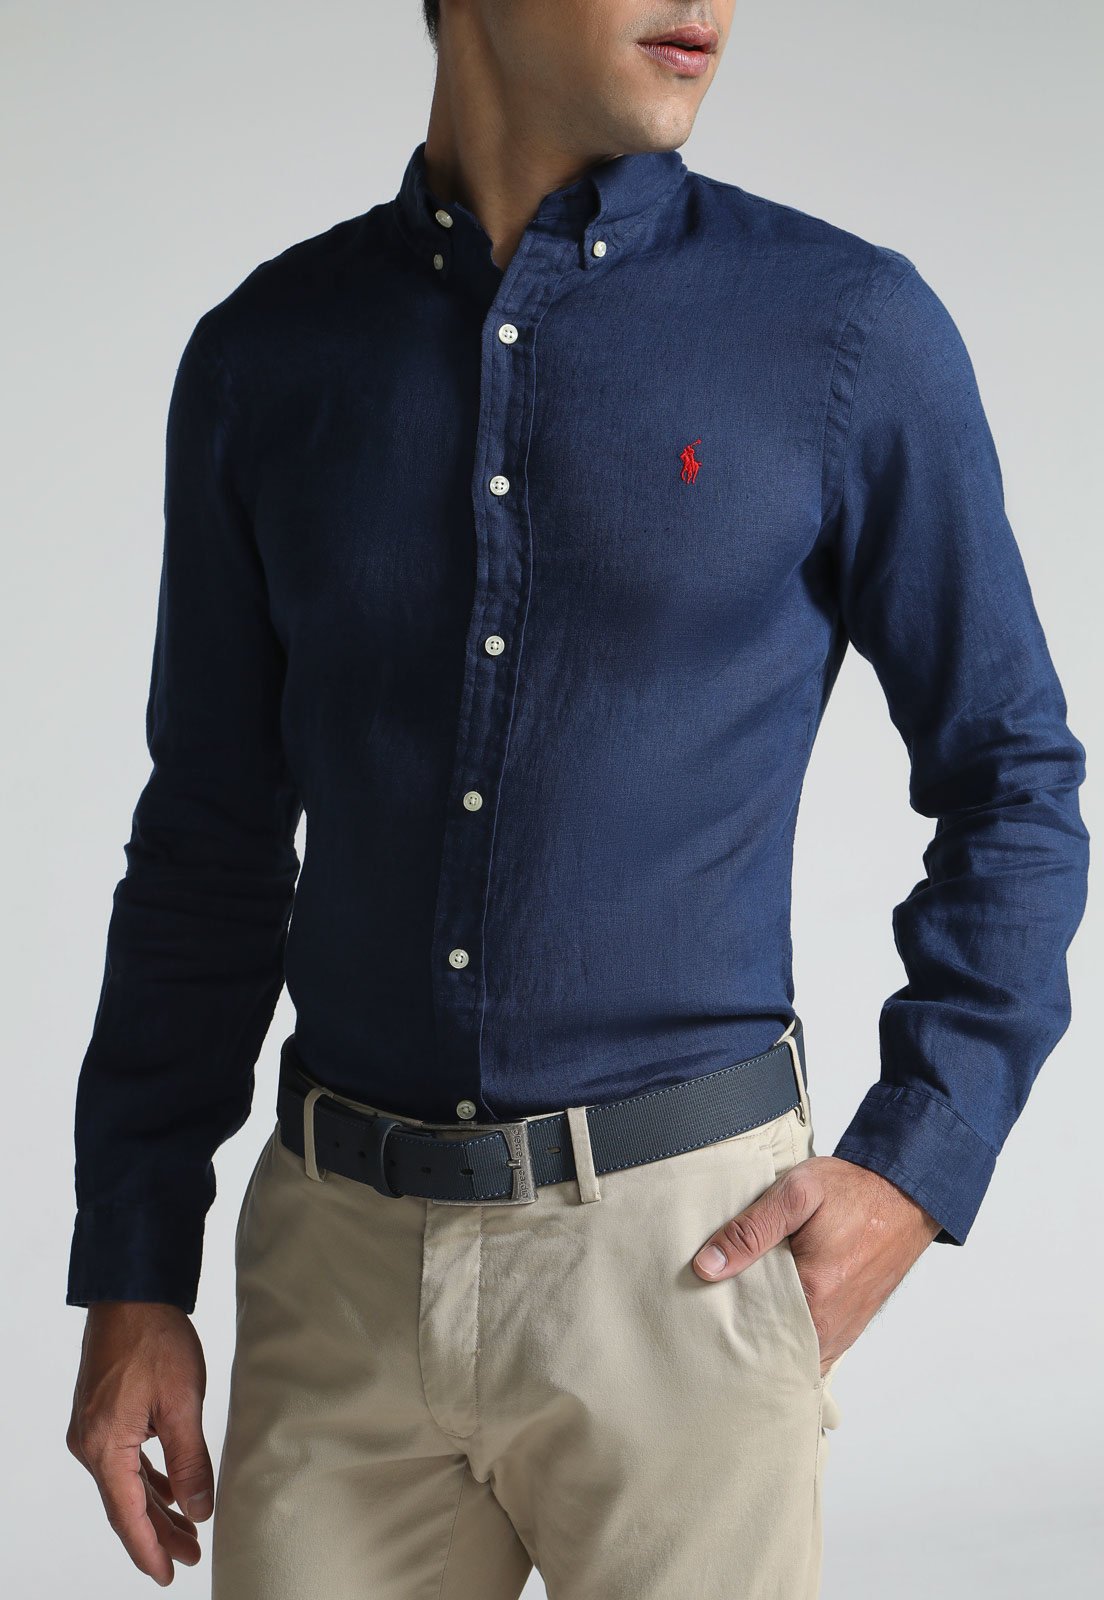 Camisa Polo Ralph Lauren Polo Tecido Azul Original - TNY115